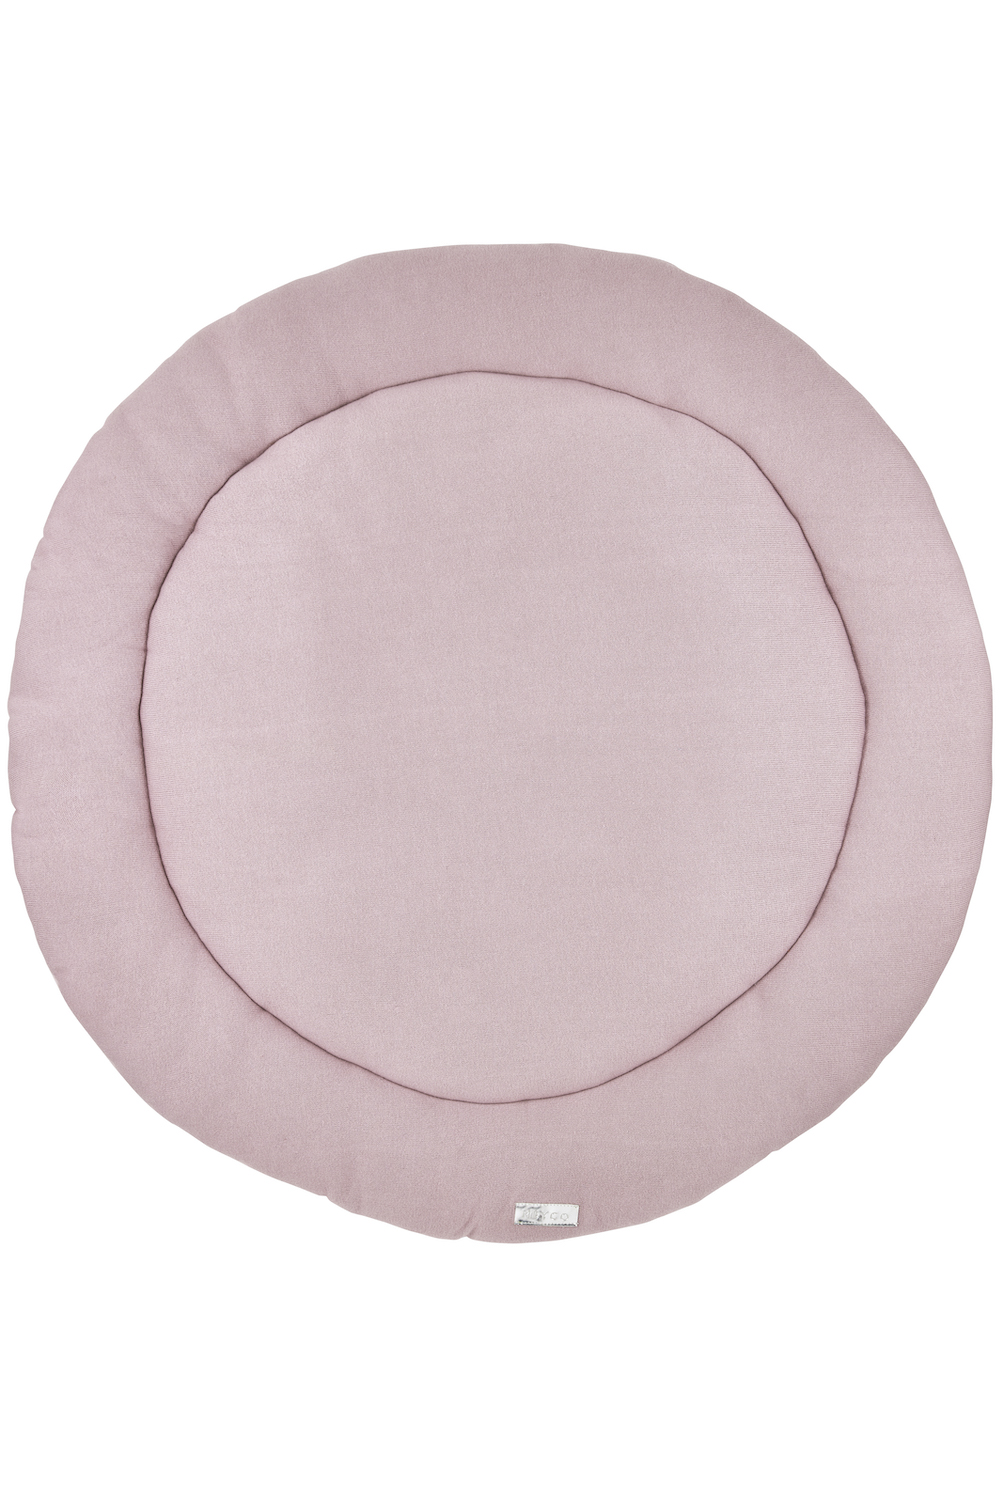 Playpen mattress round - lilac - ⌀95cm